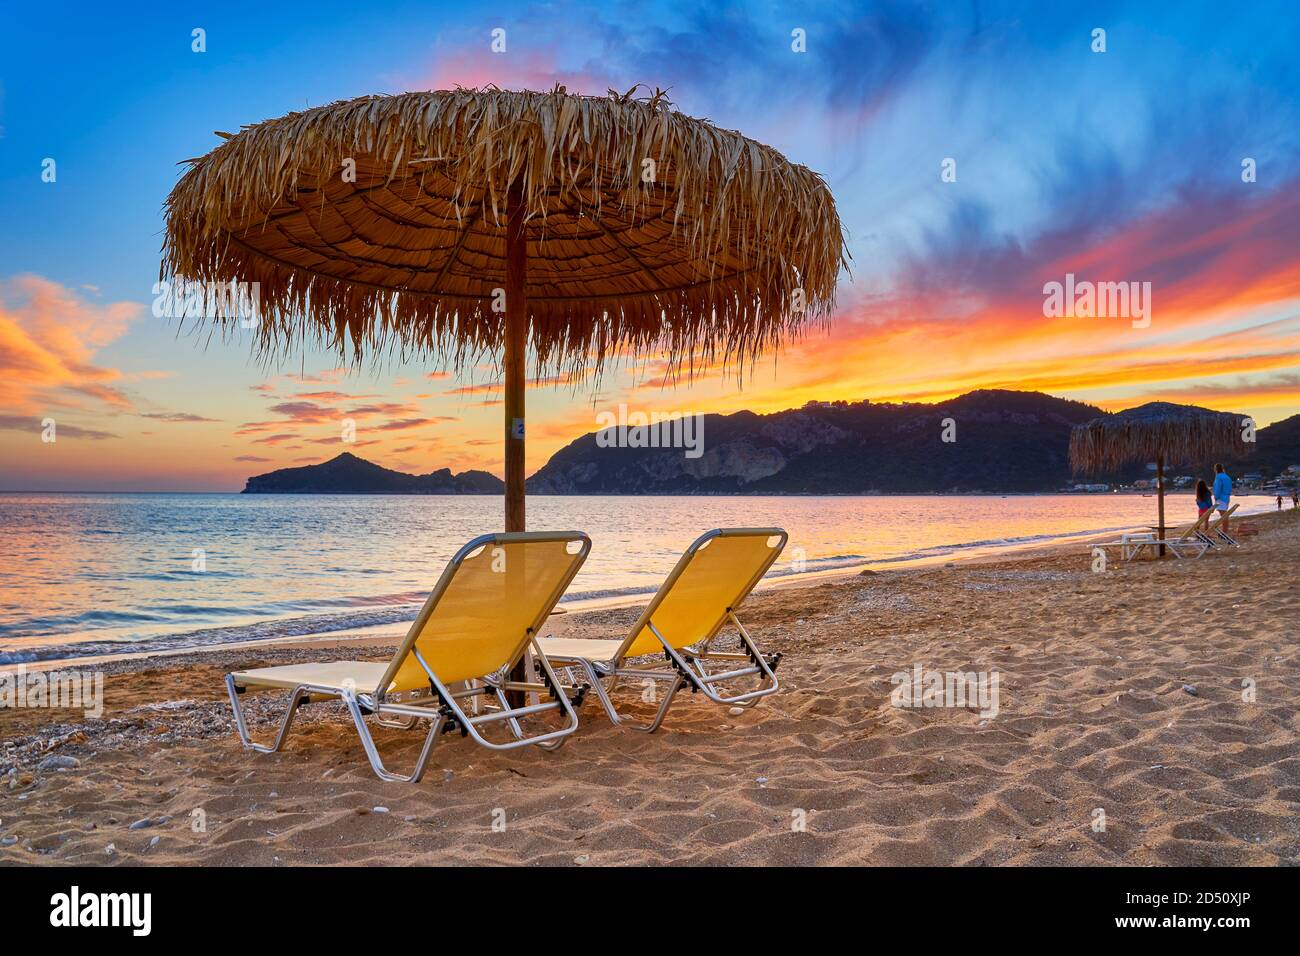 Coucher de soleil sur la plage, île de Corfou, Grèce Banque D'Images